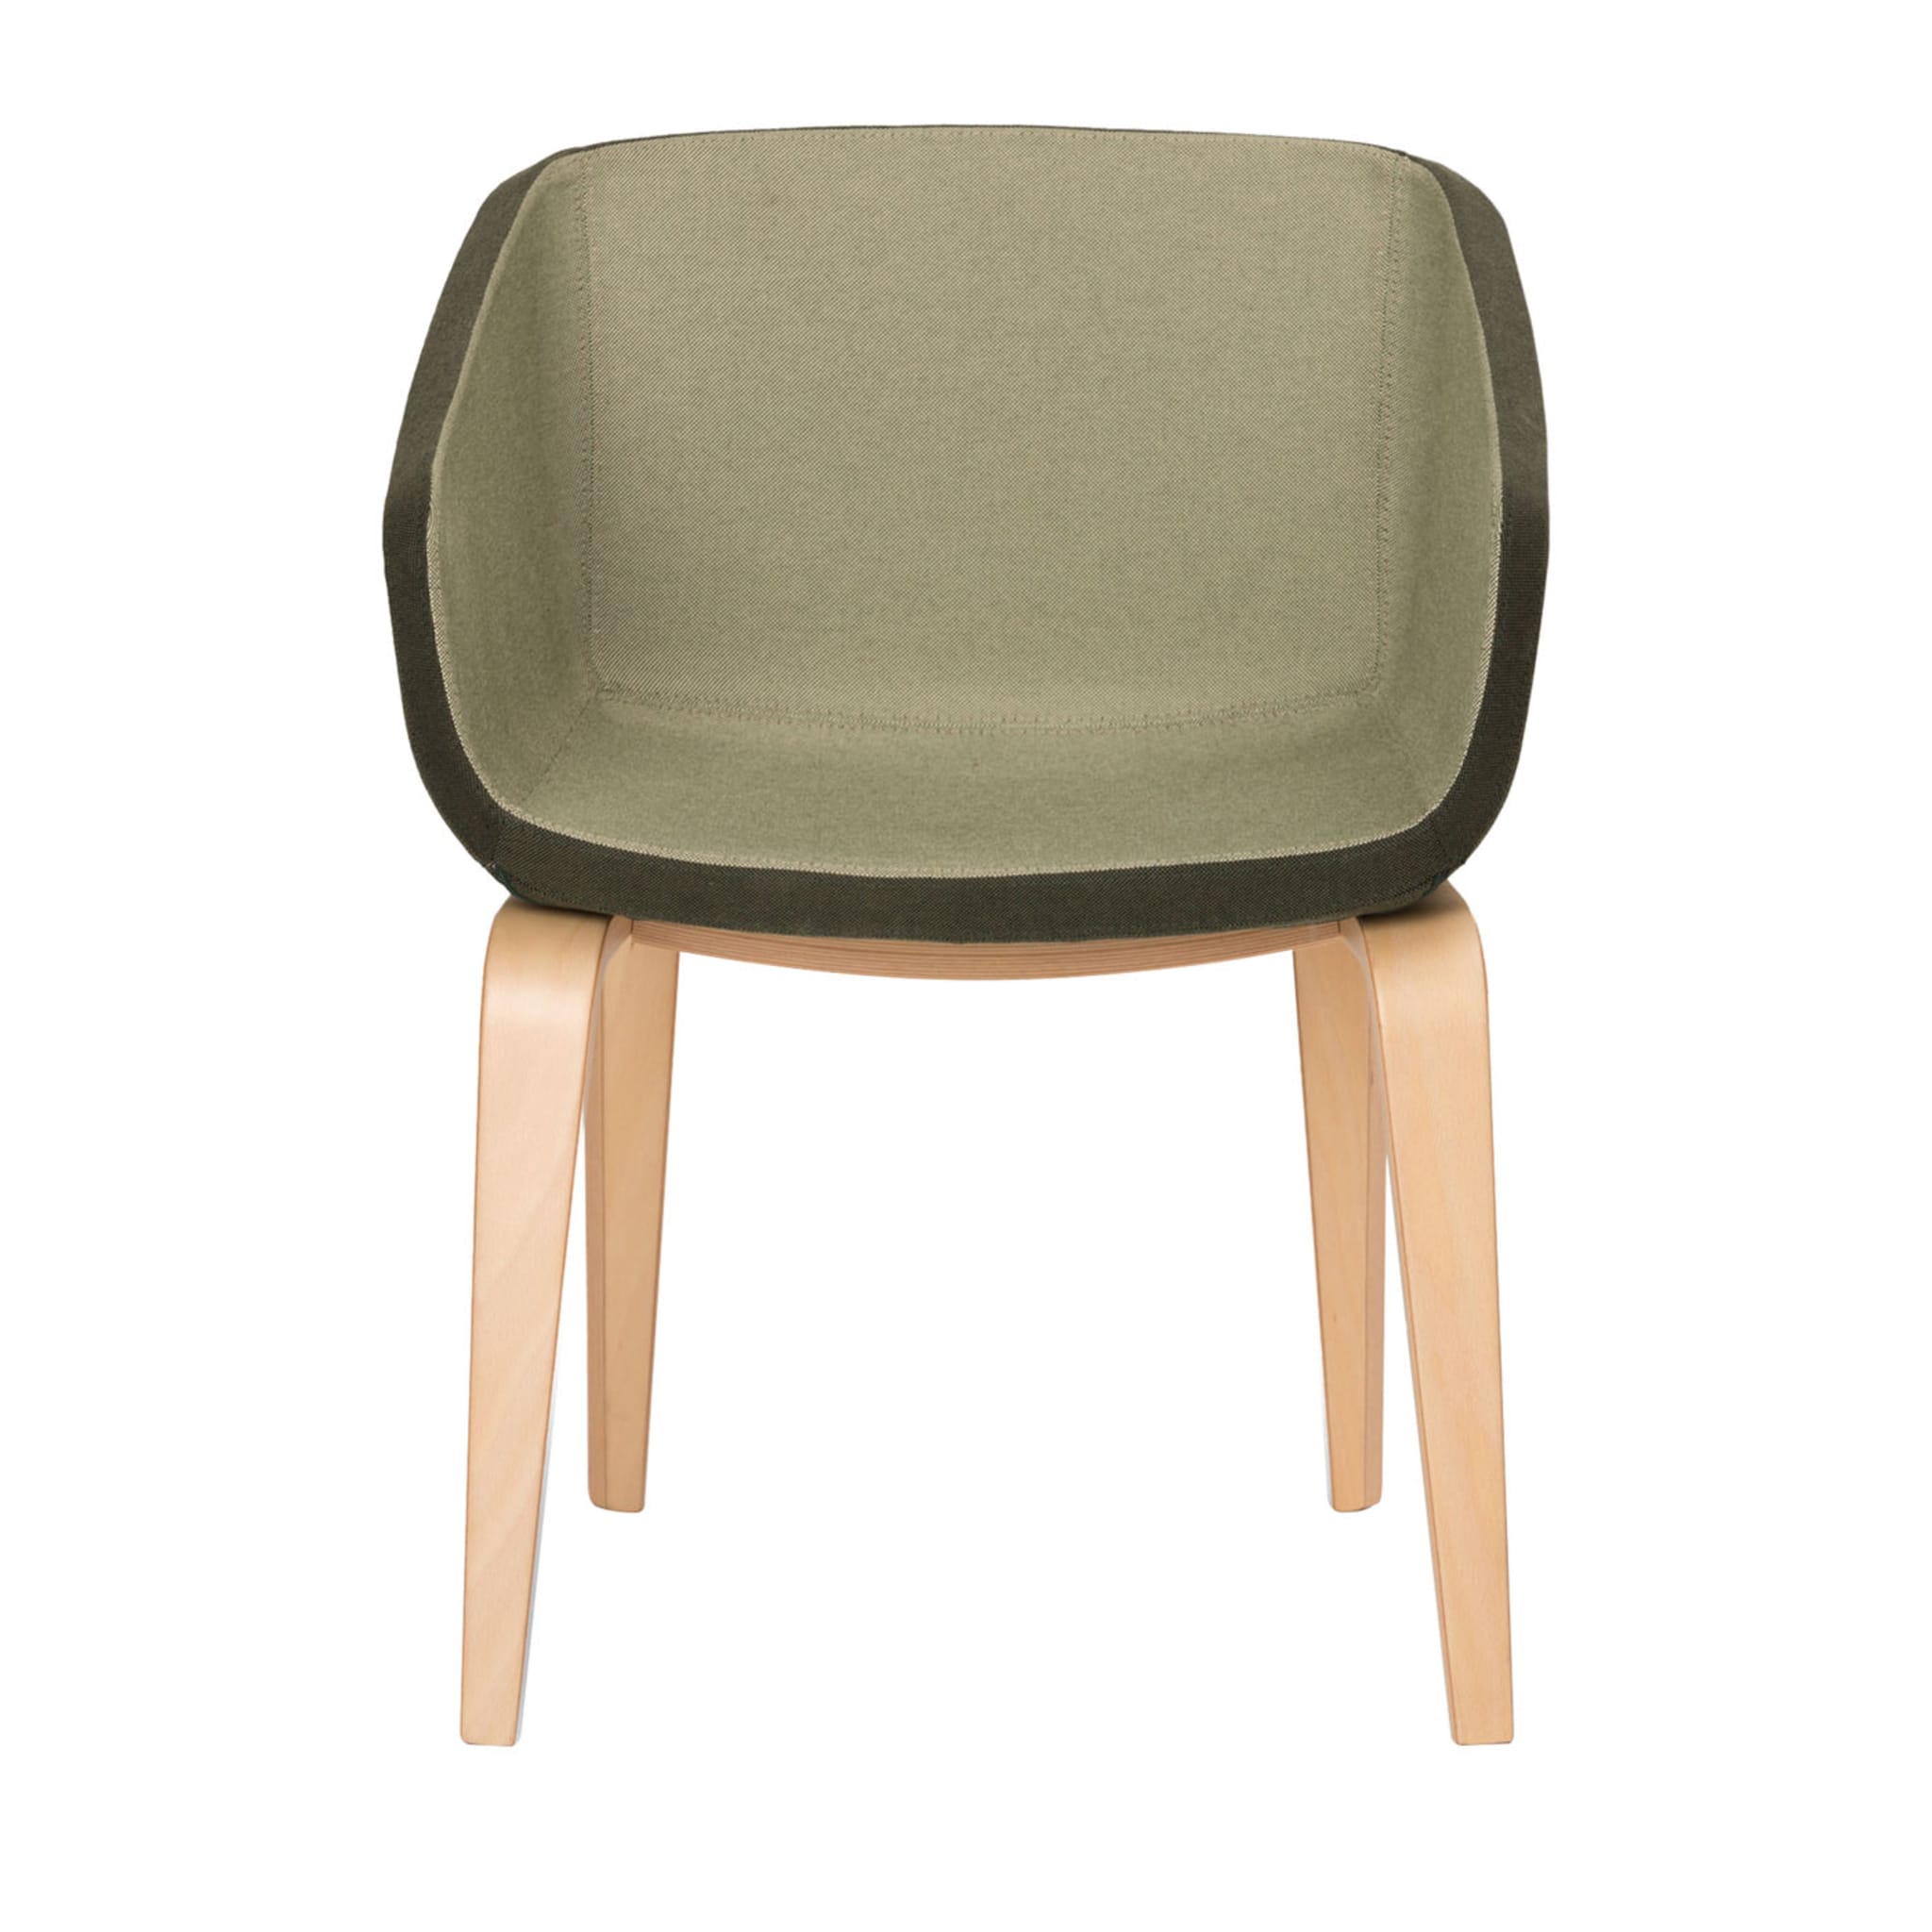 Arca Green chair - Main view